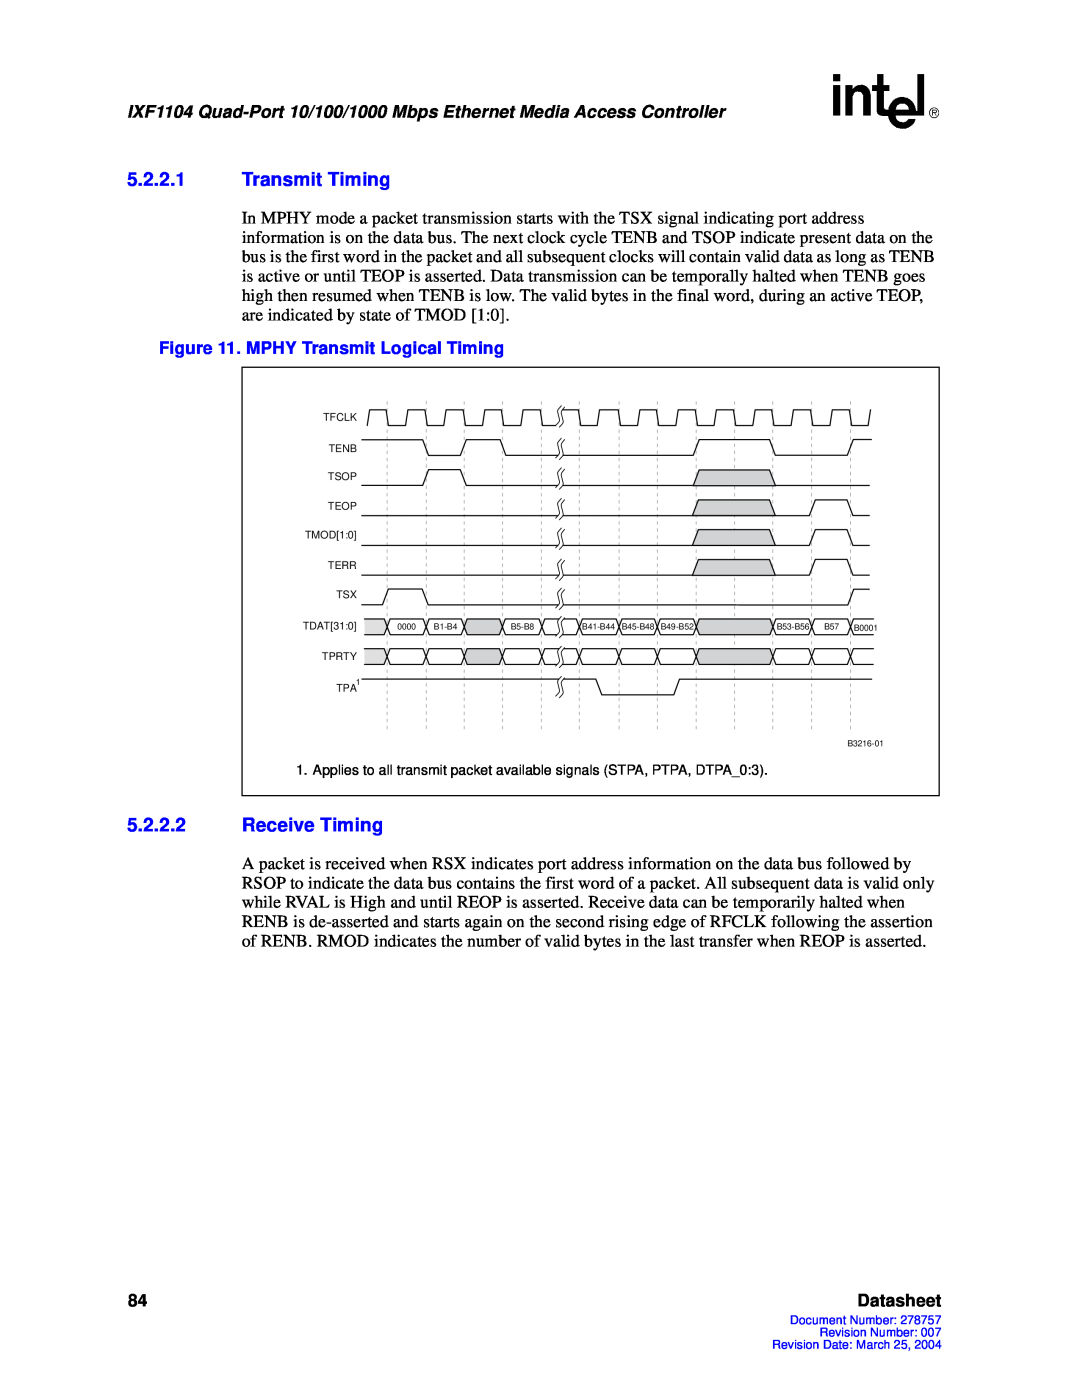 Intel IXF1104 manual 5.2.2.1Transmit Timing, 5.2.2.2Receive Timing, Datasheet 